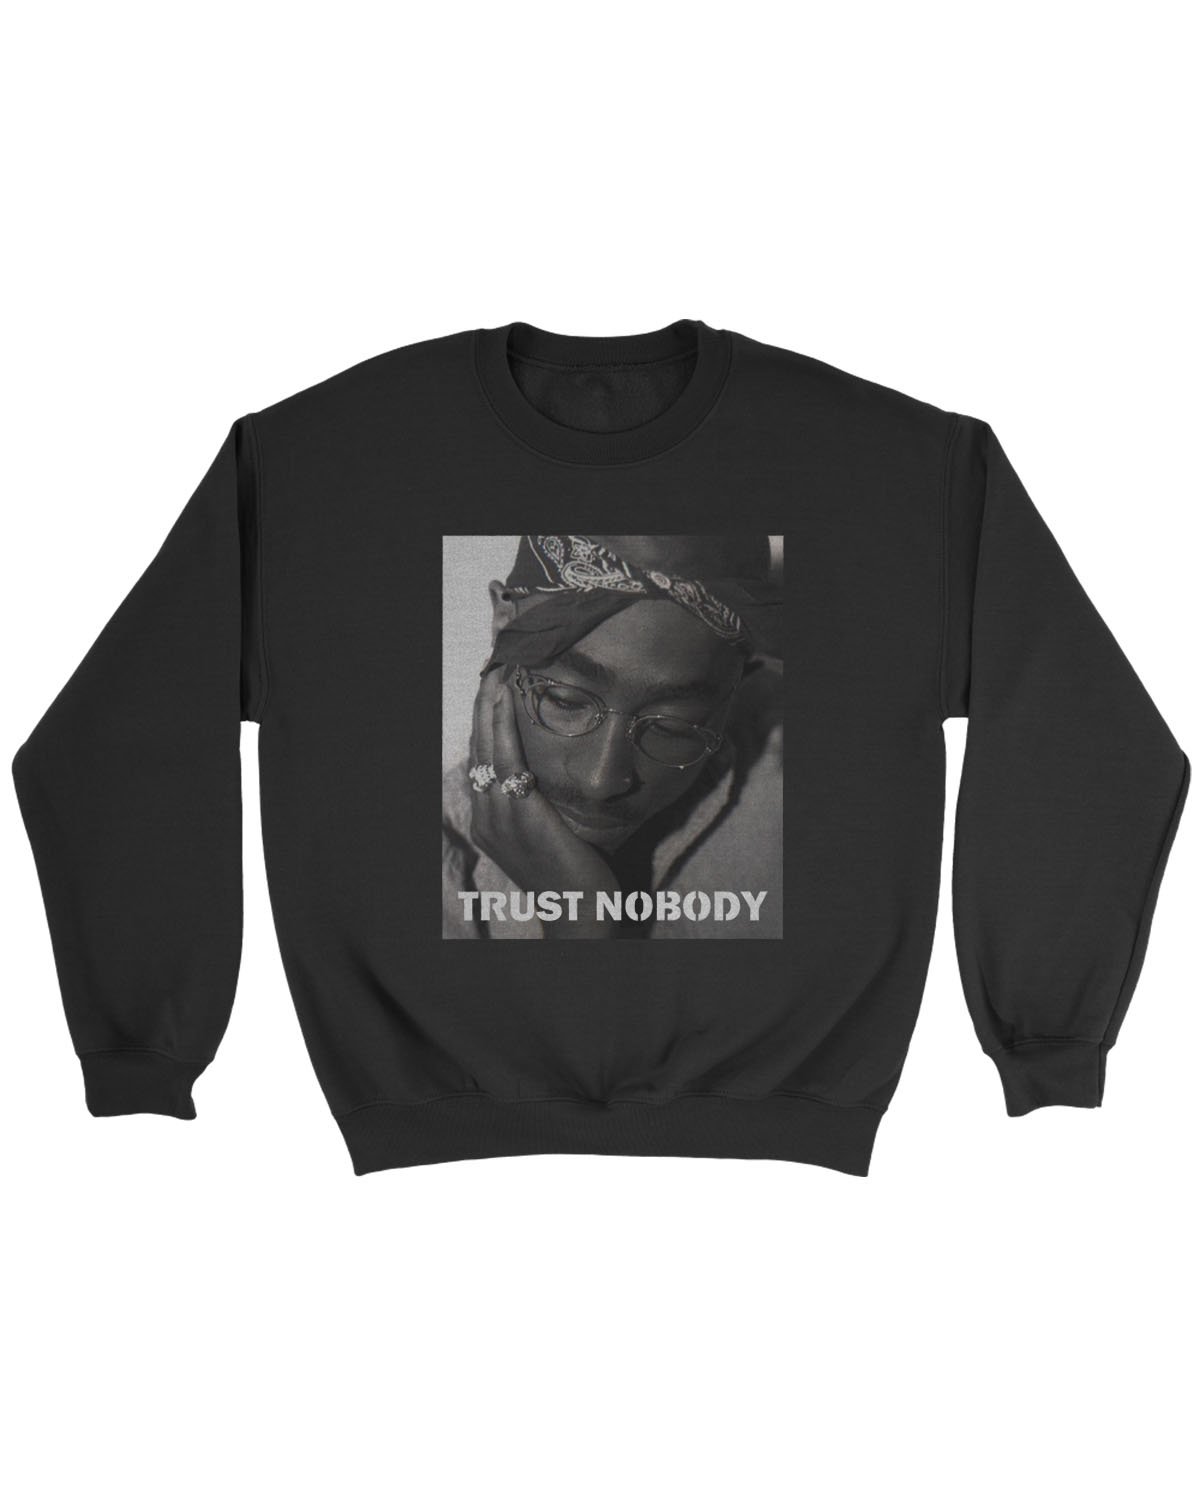 Tupac Shakur Trust Nobody Sweatshirt